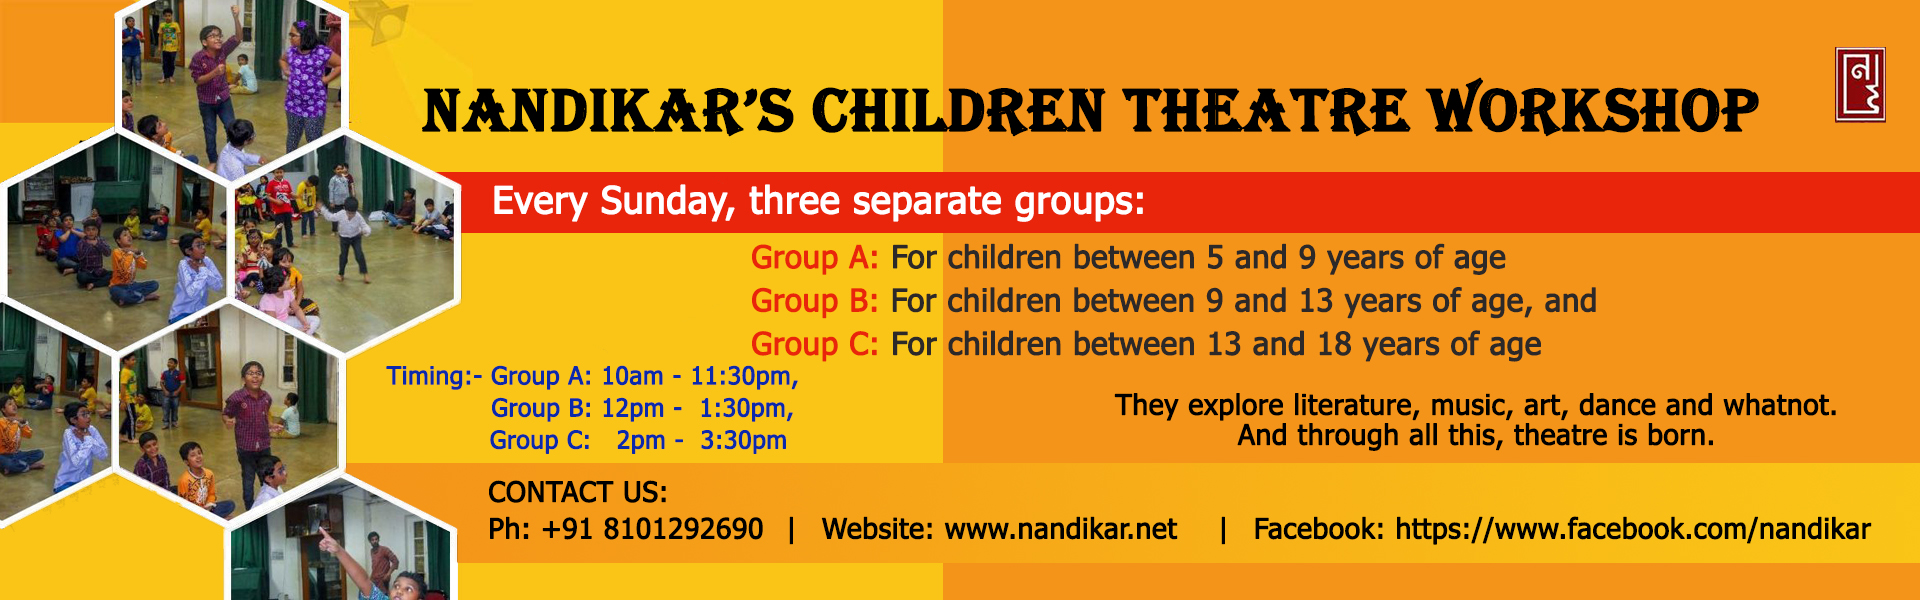 Nandikar's Children Theatre Workshop 2018